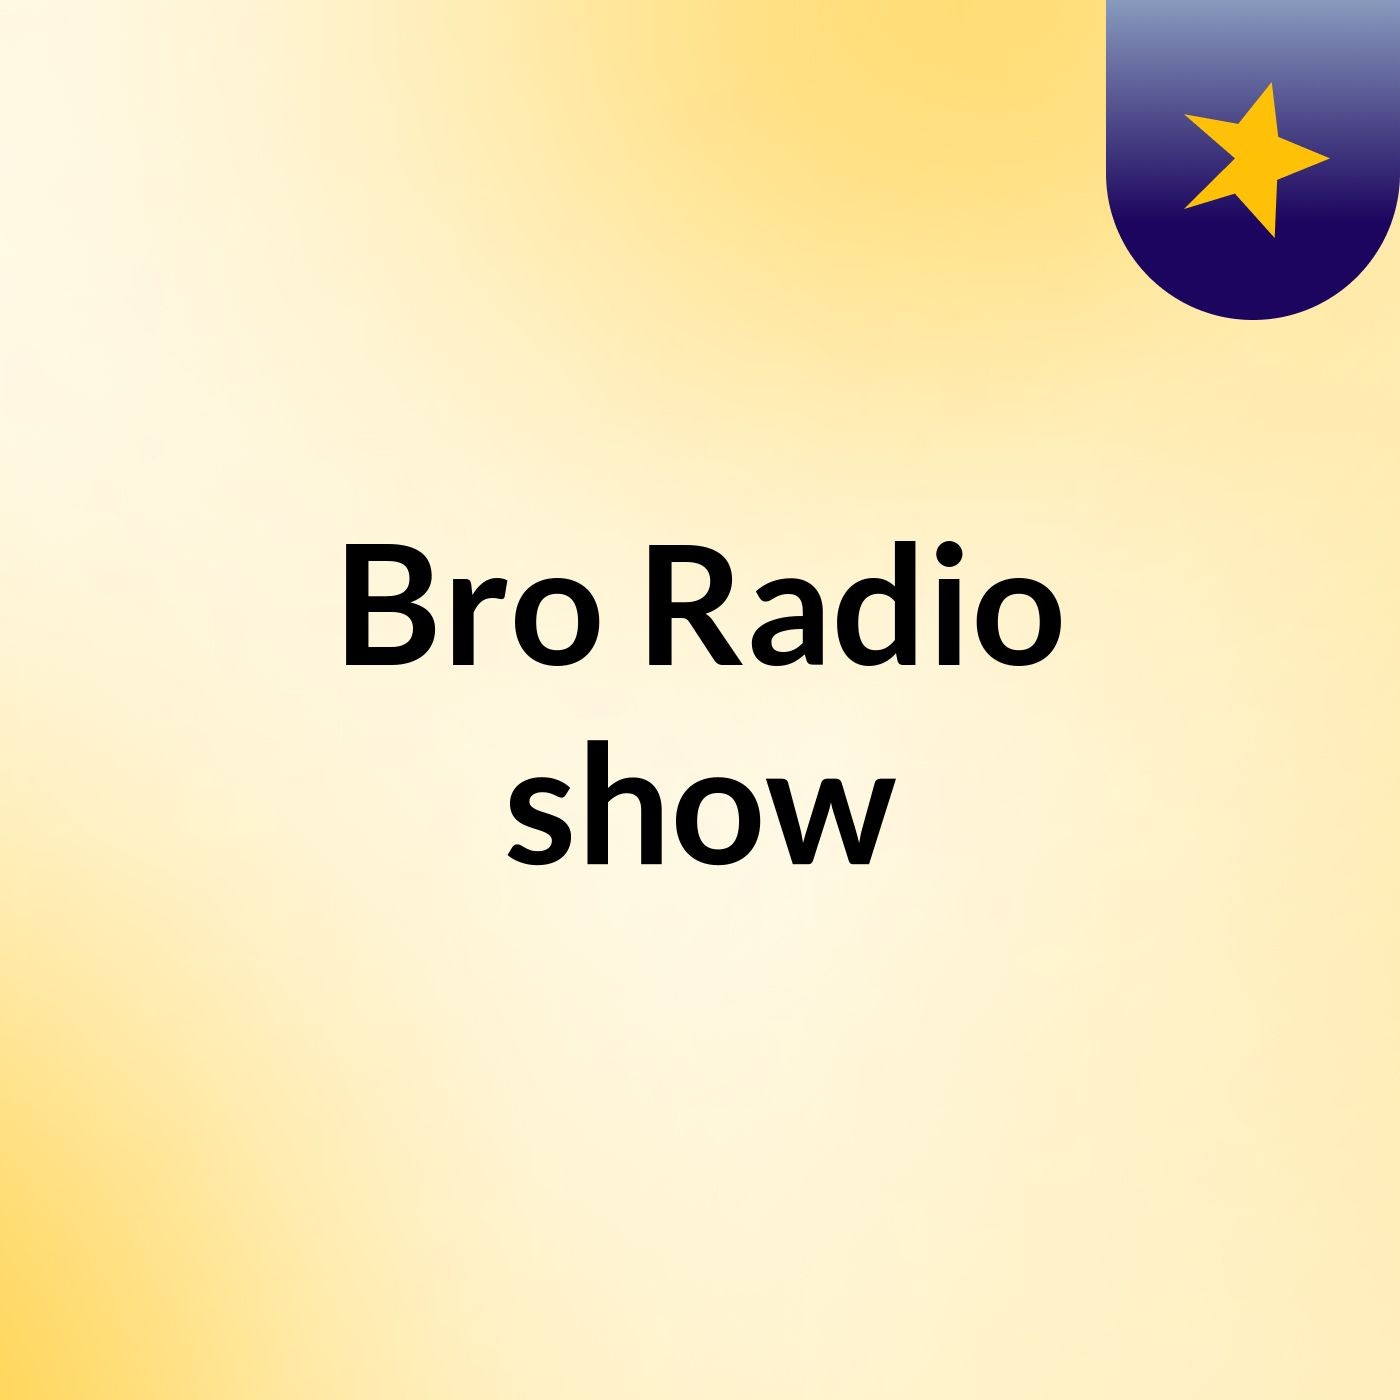 Bro Radio show